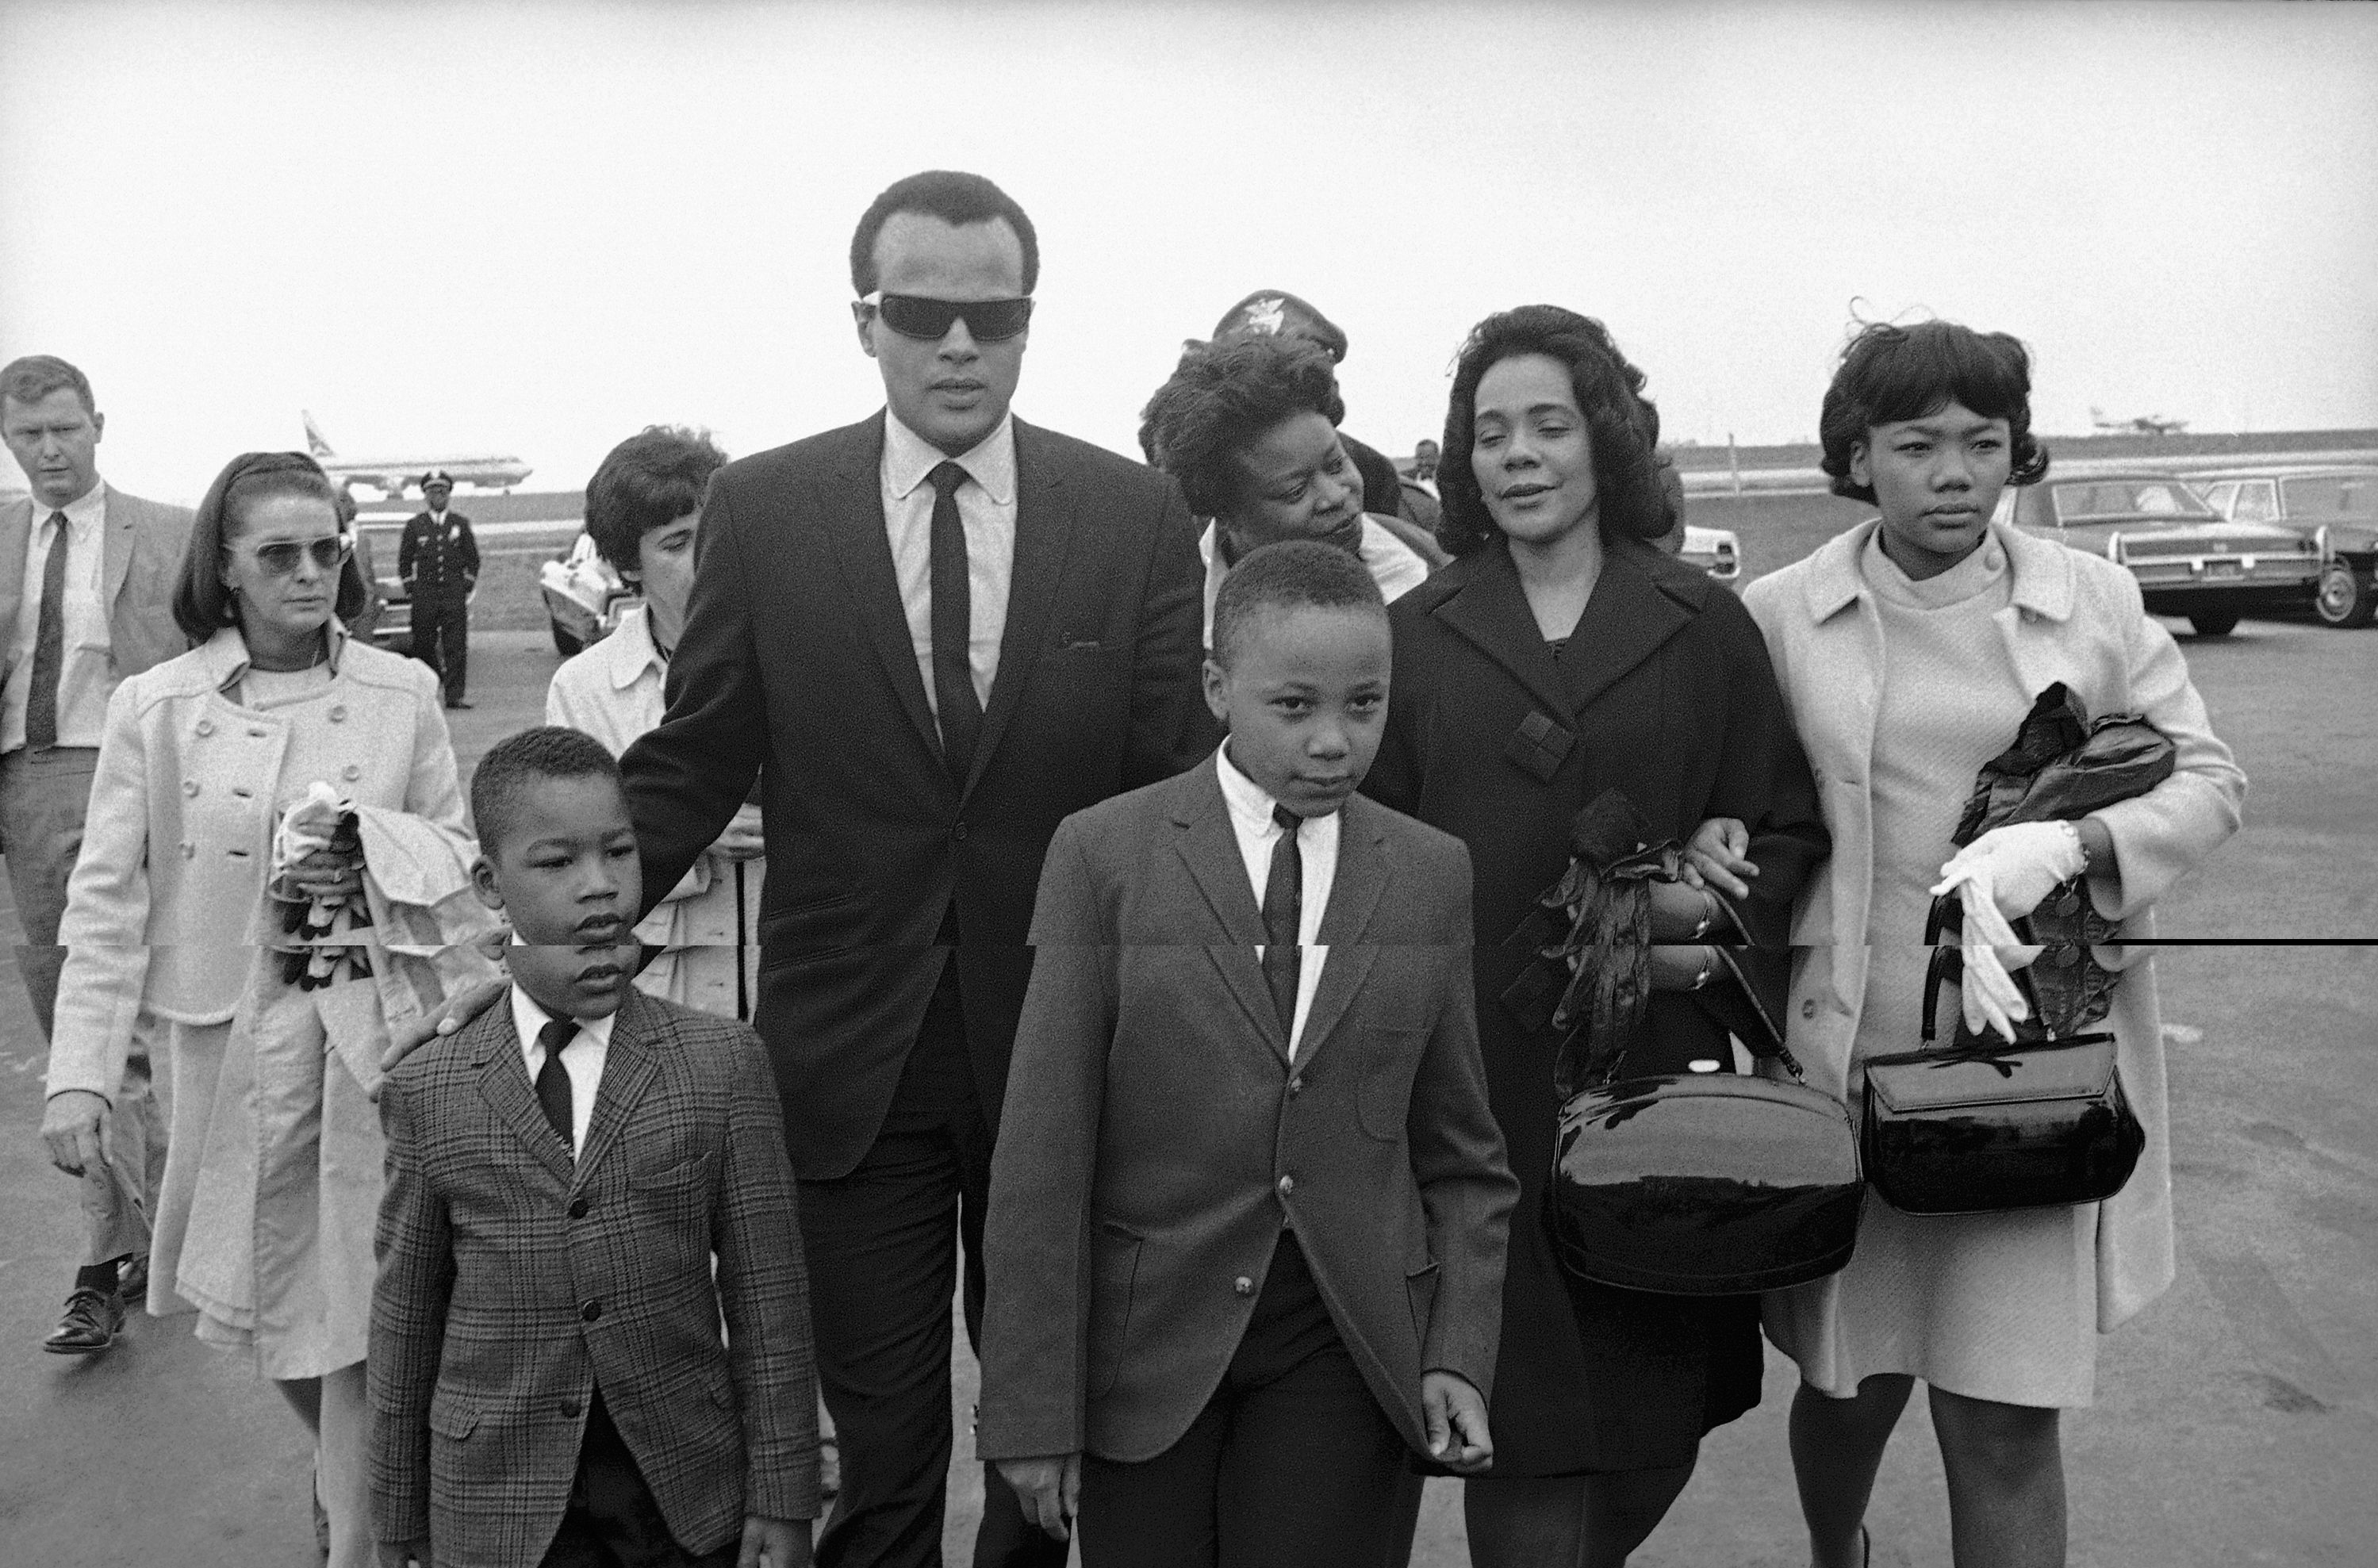 PHOTOS: Martin Luther King Jr.'s Family Life | ATL19682998 x 1977